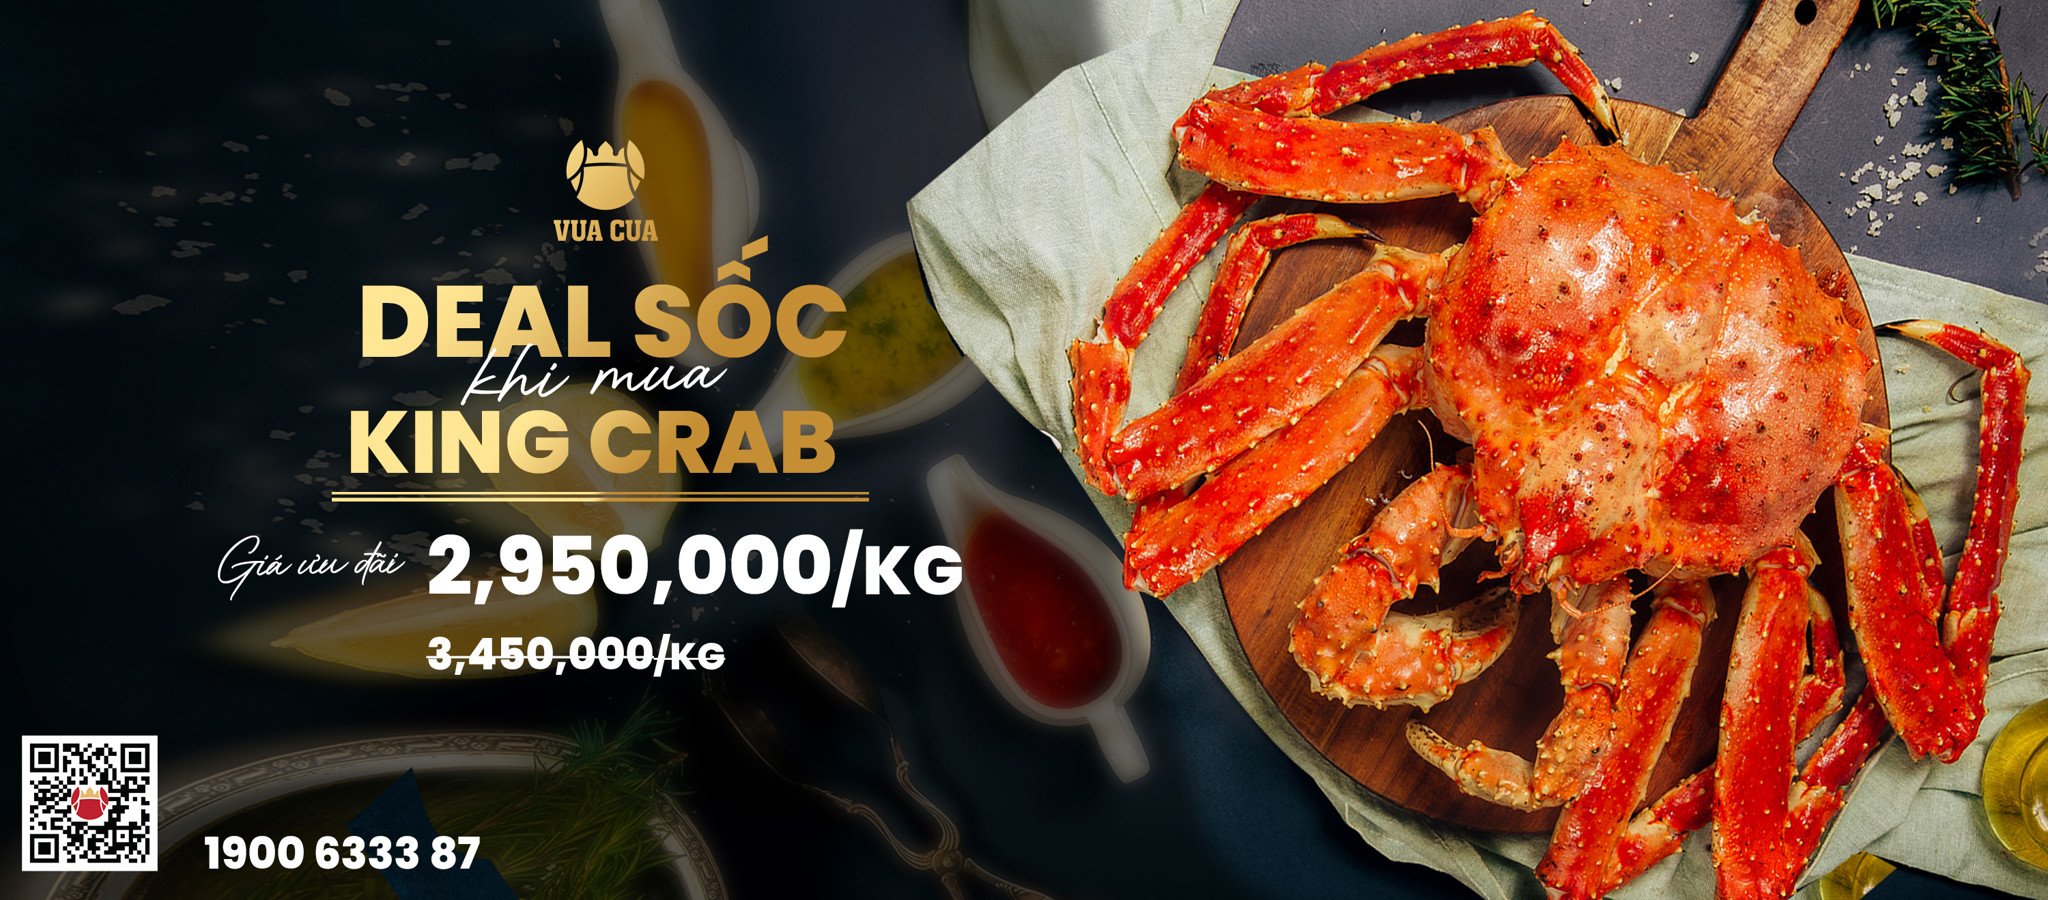 Mua King crab deal sốc - Giá chỉ còn 2,950,000 VND / kg